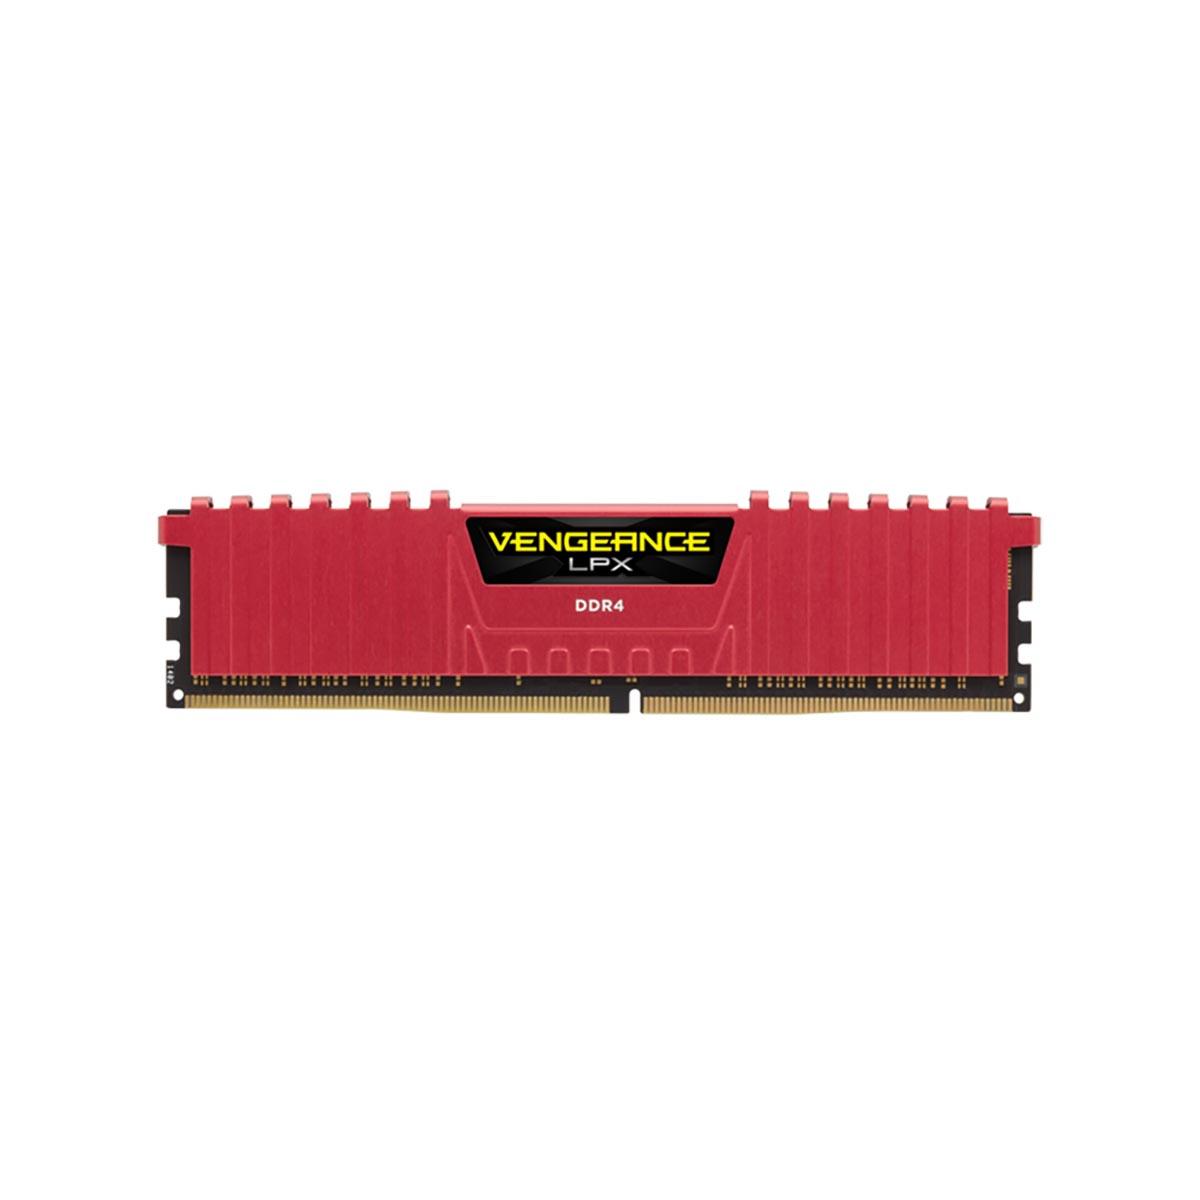 MEMORIA DIMM DDR4 CORSAIR (CMK8GX4M1A2400C16R) 8GB 2400MHZ VENGEANCE LPX DISIP. ROJO - CORSAIR